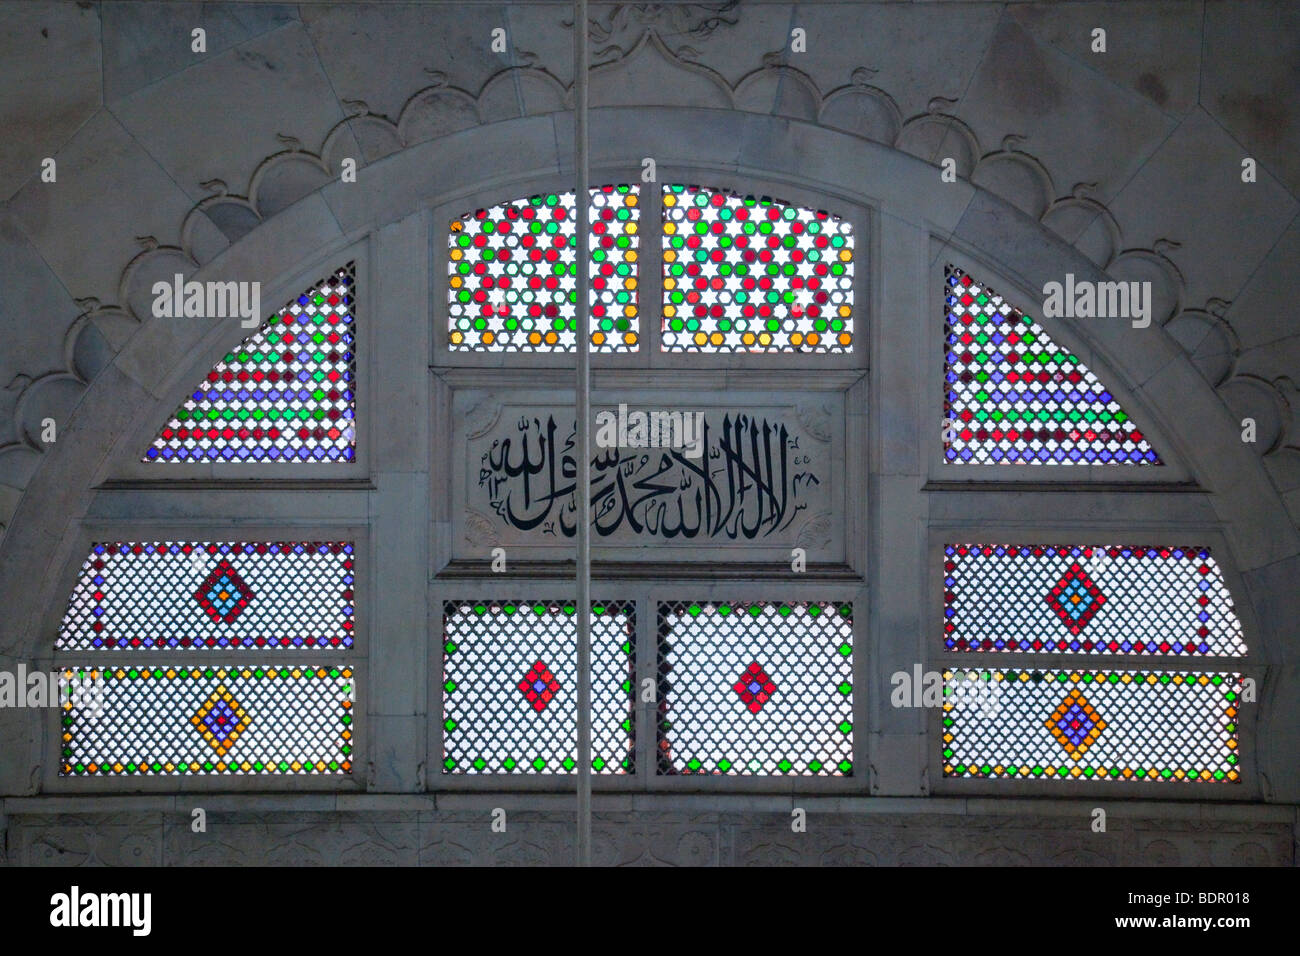 Inscription au dessus de l'arabe dans le Mirhab de la mosquée Nakhoda Dans Calcutta Inde Banque D'Images